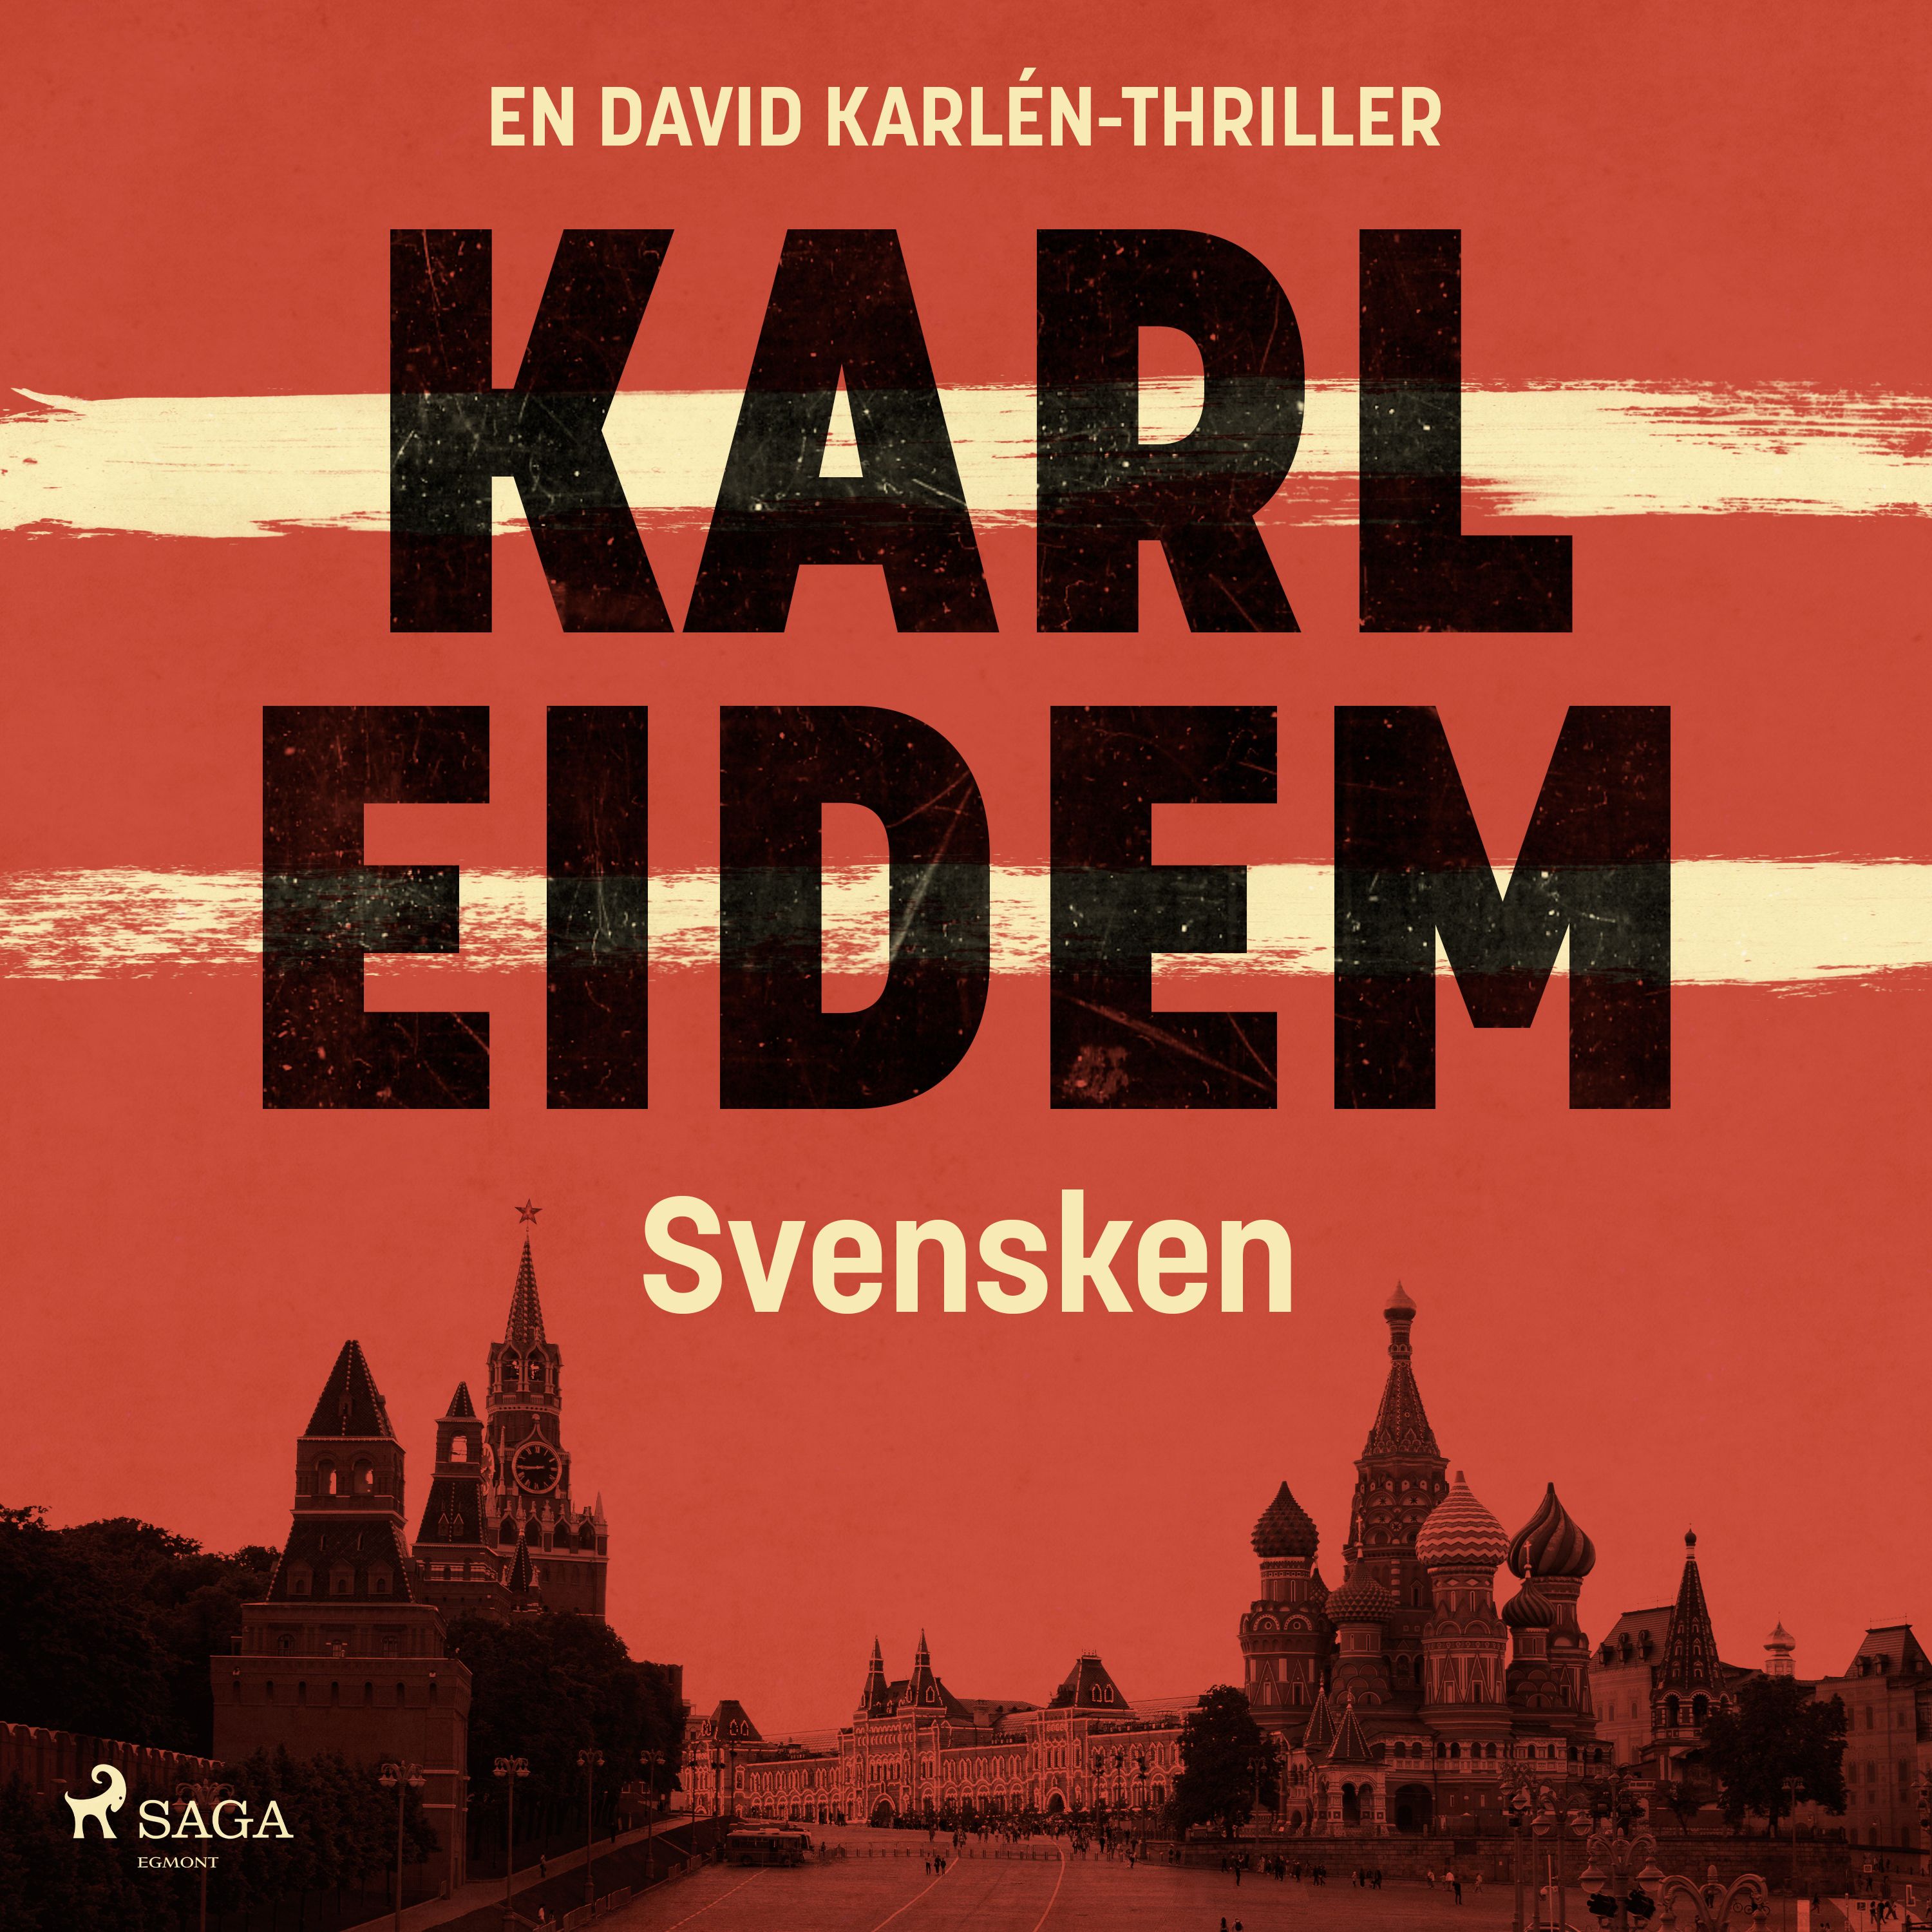 Svensken, ljudbok av Karl Eidem